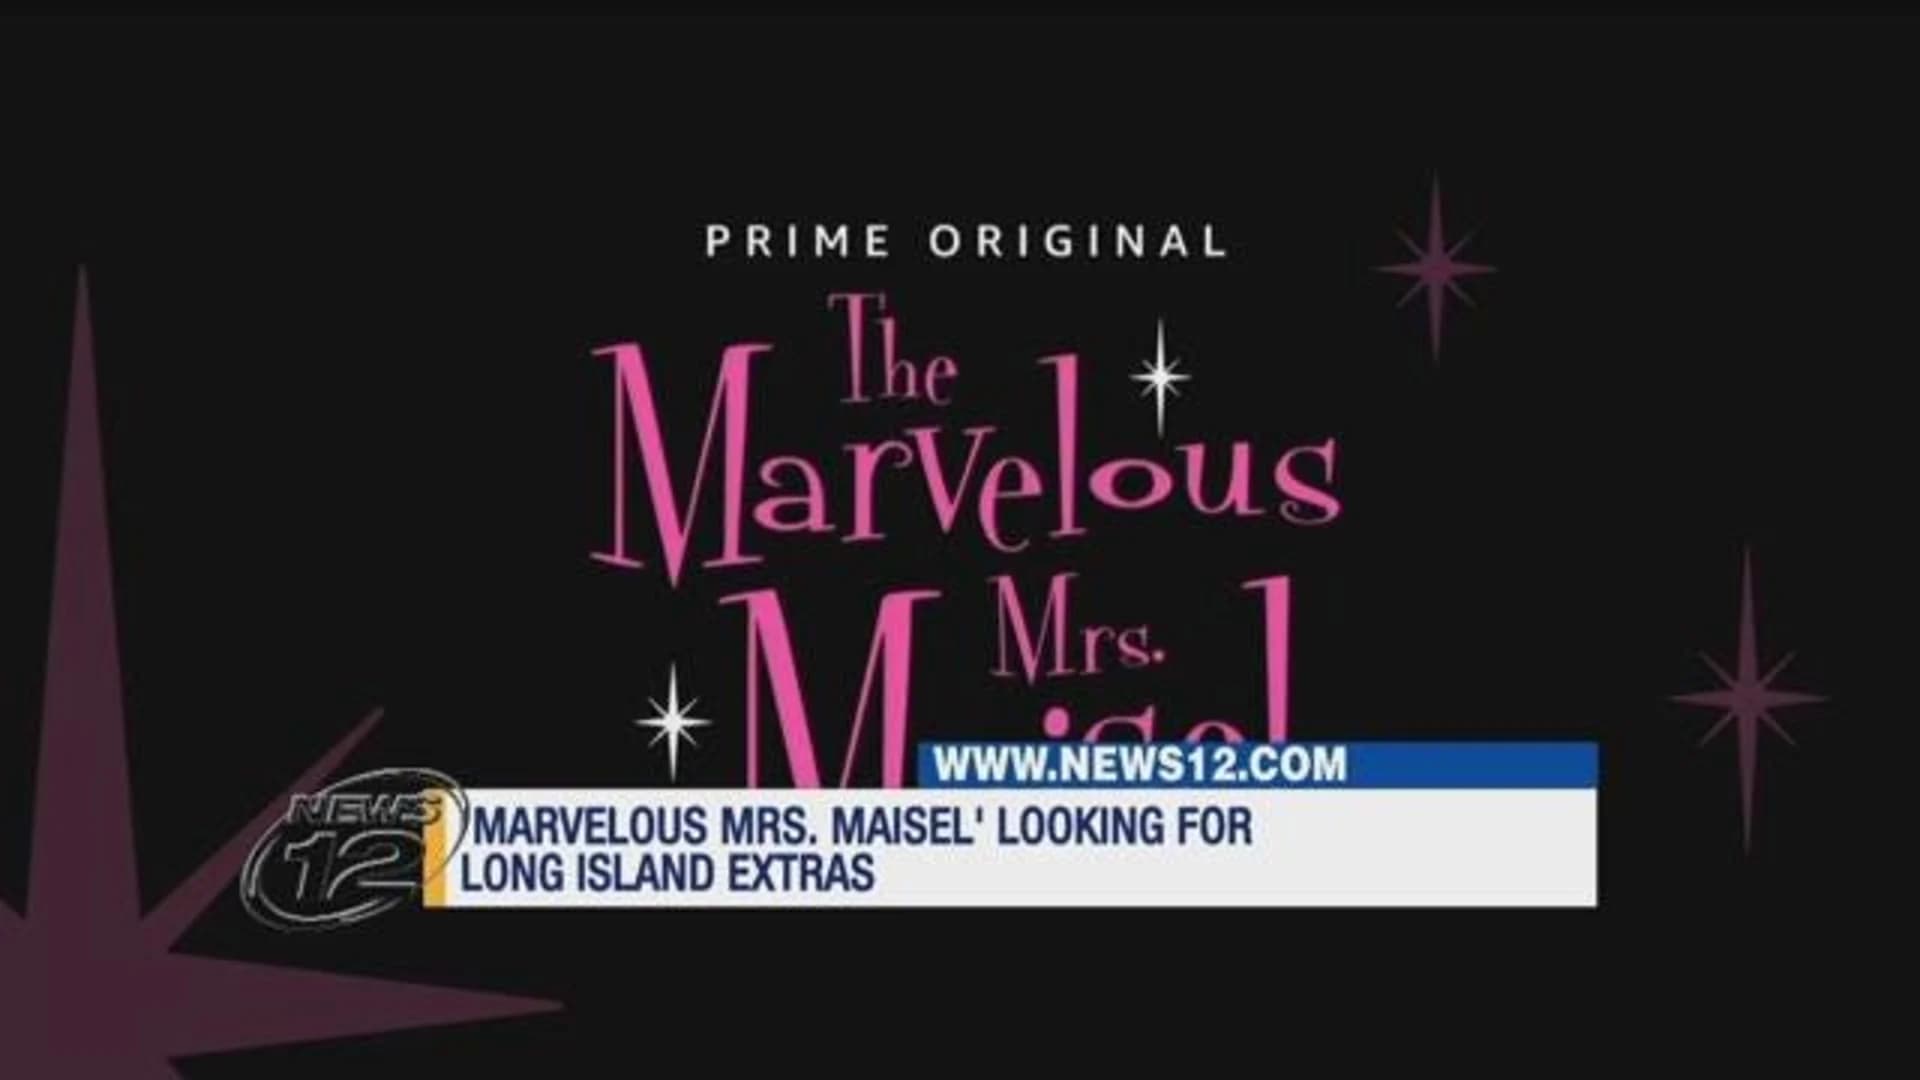 Calling for a few good men - 'The Marvelous Mrs. Maisel' holds casting call for LI shoot